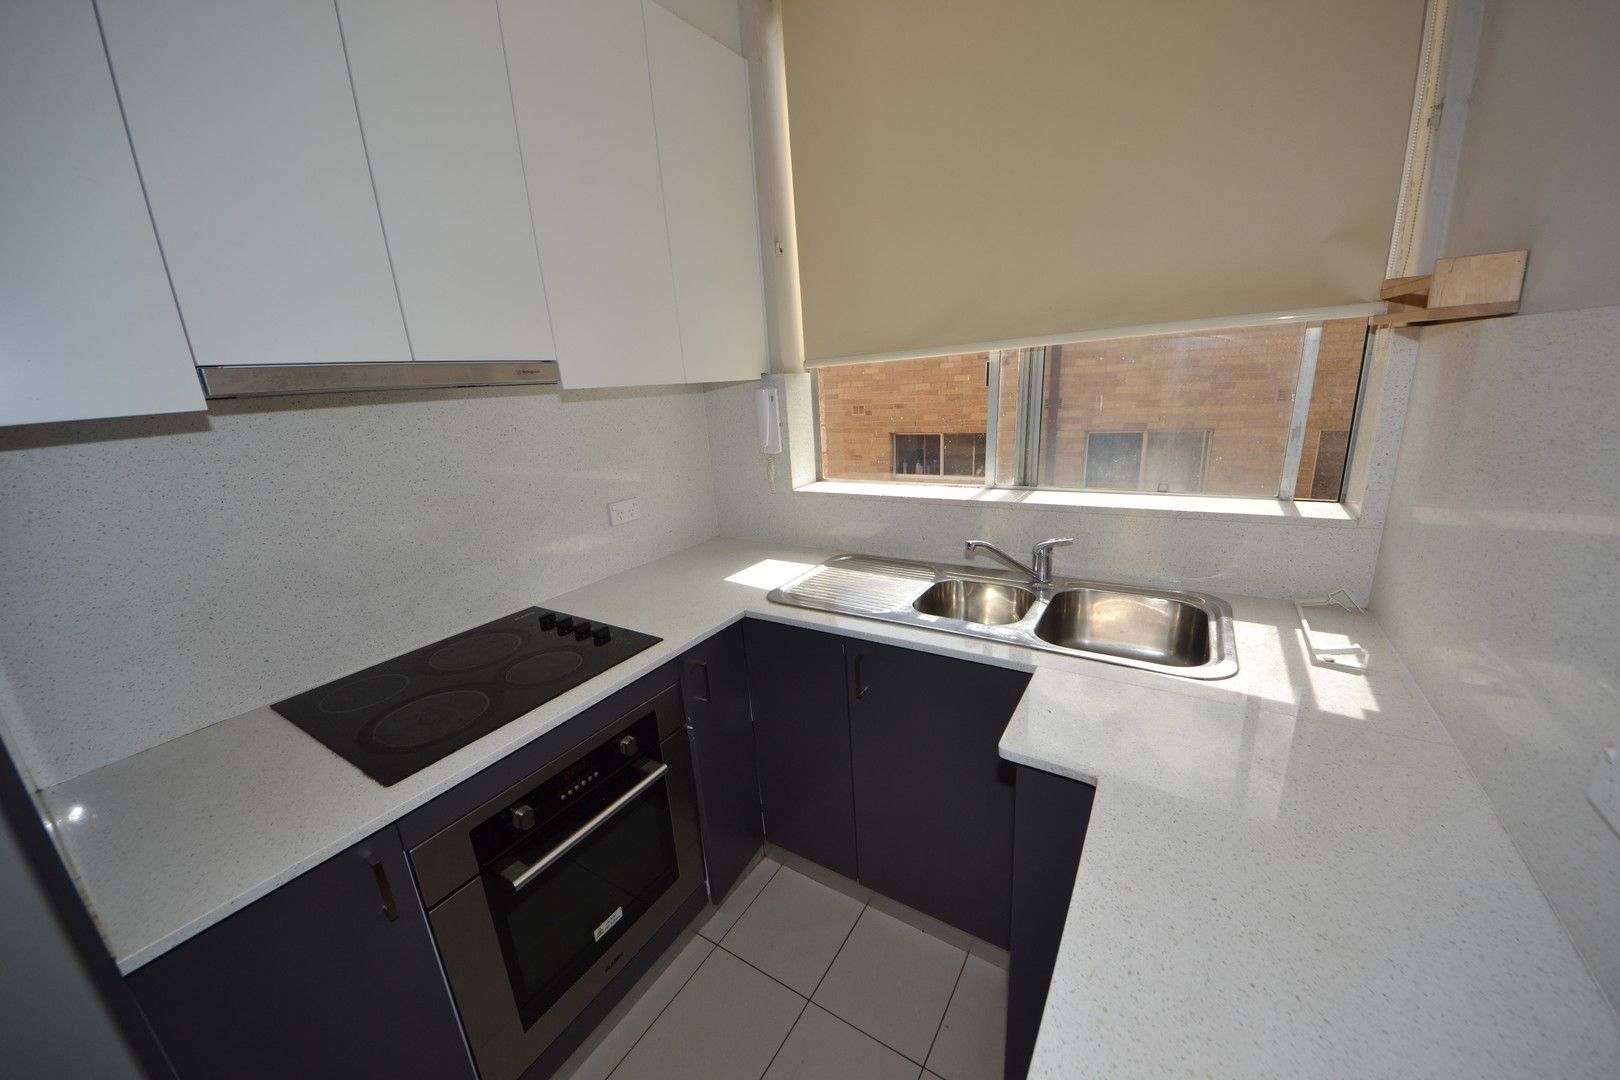 2 bedrooms Apartment / Unit / Flat in 5/142 Woodburn Road BERALA NSW, 2141